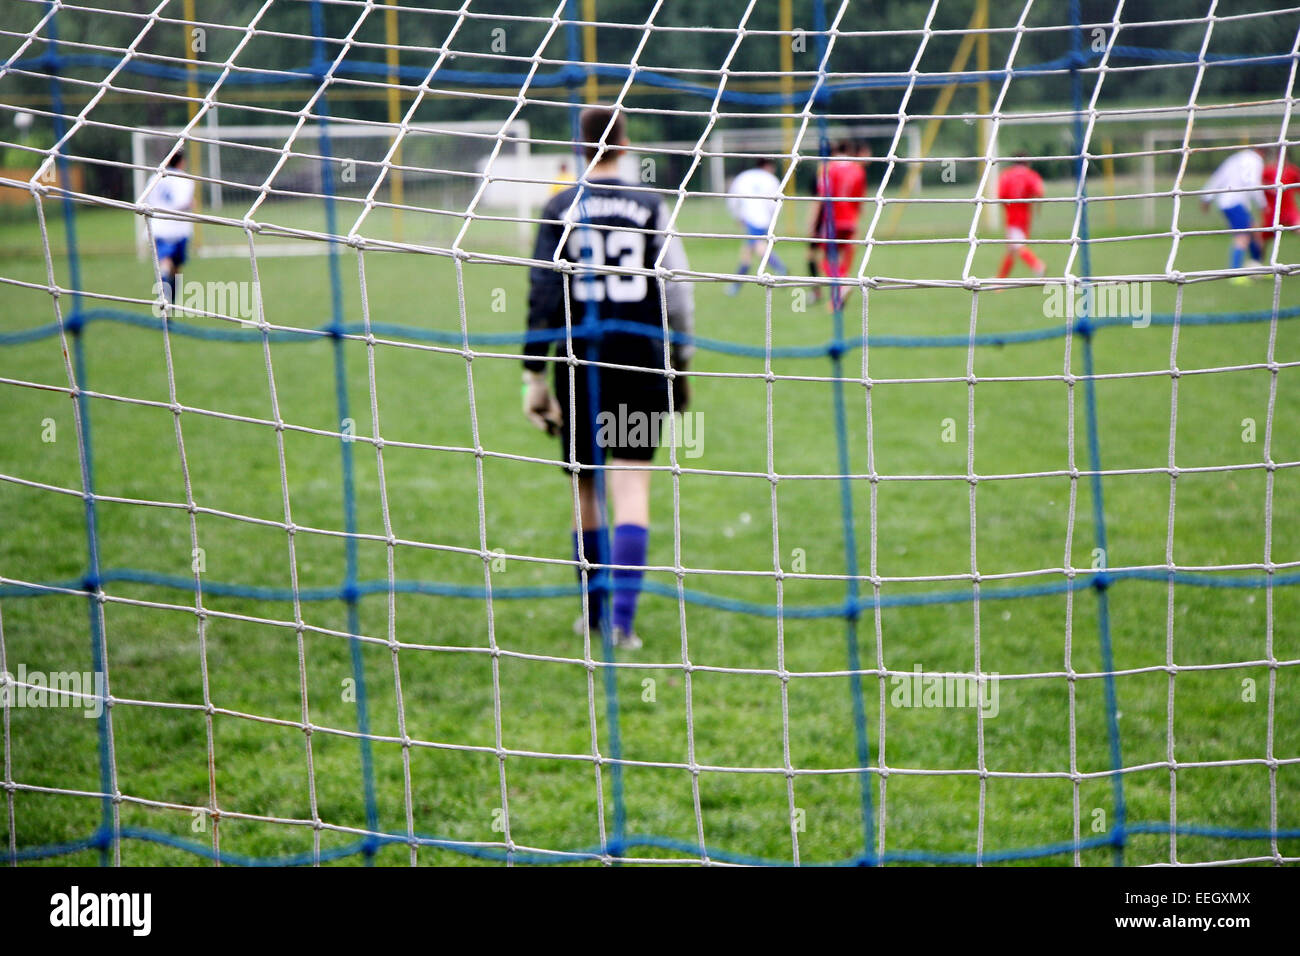 Obiettivo di calcio si ingranano con i giocatori di calcio in azione sullo sfondo soft focus Foto Stock